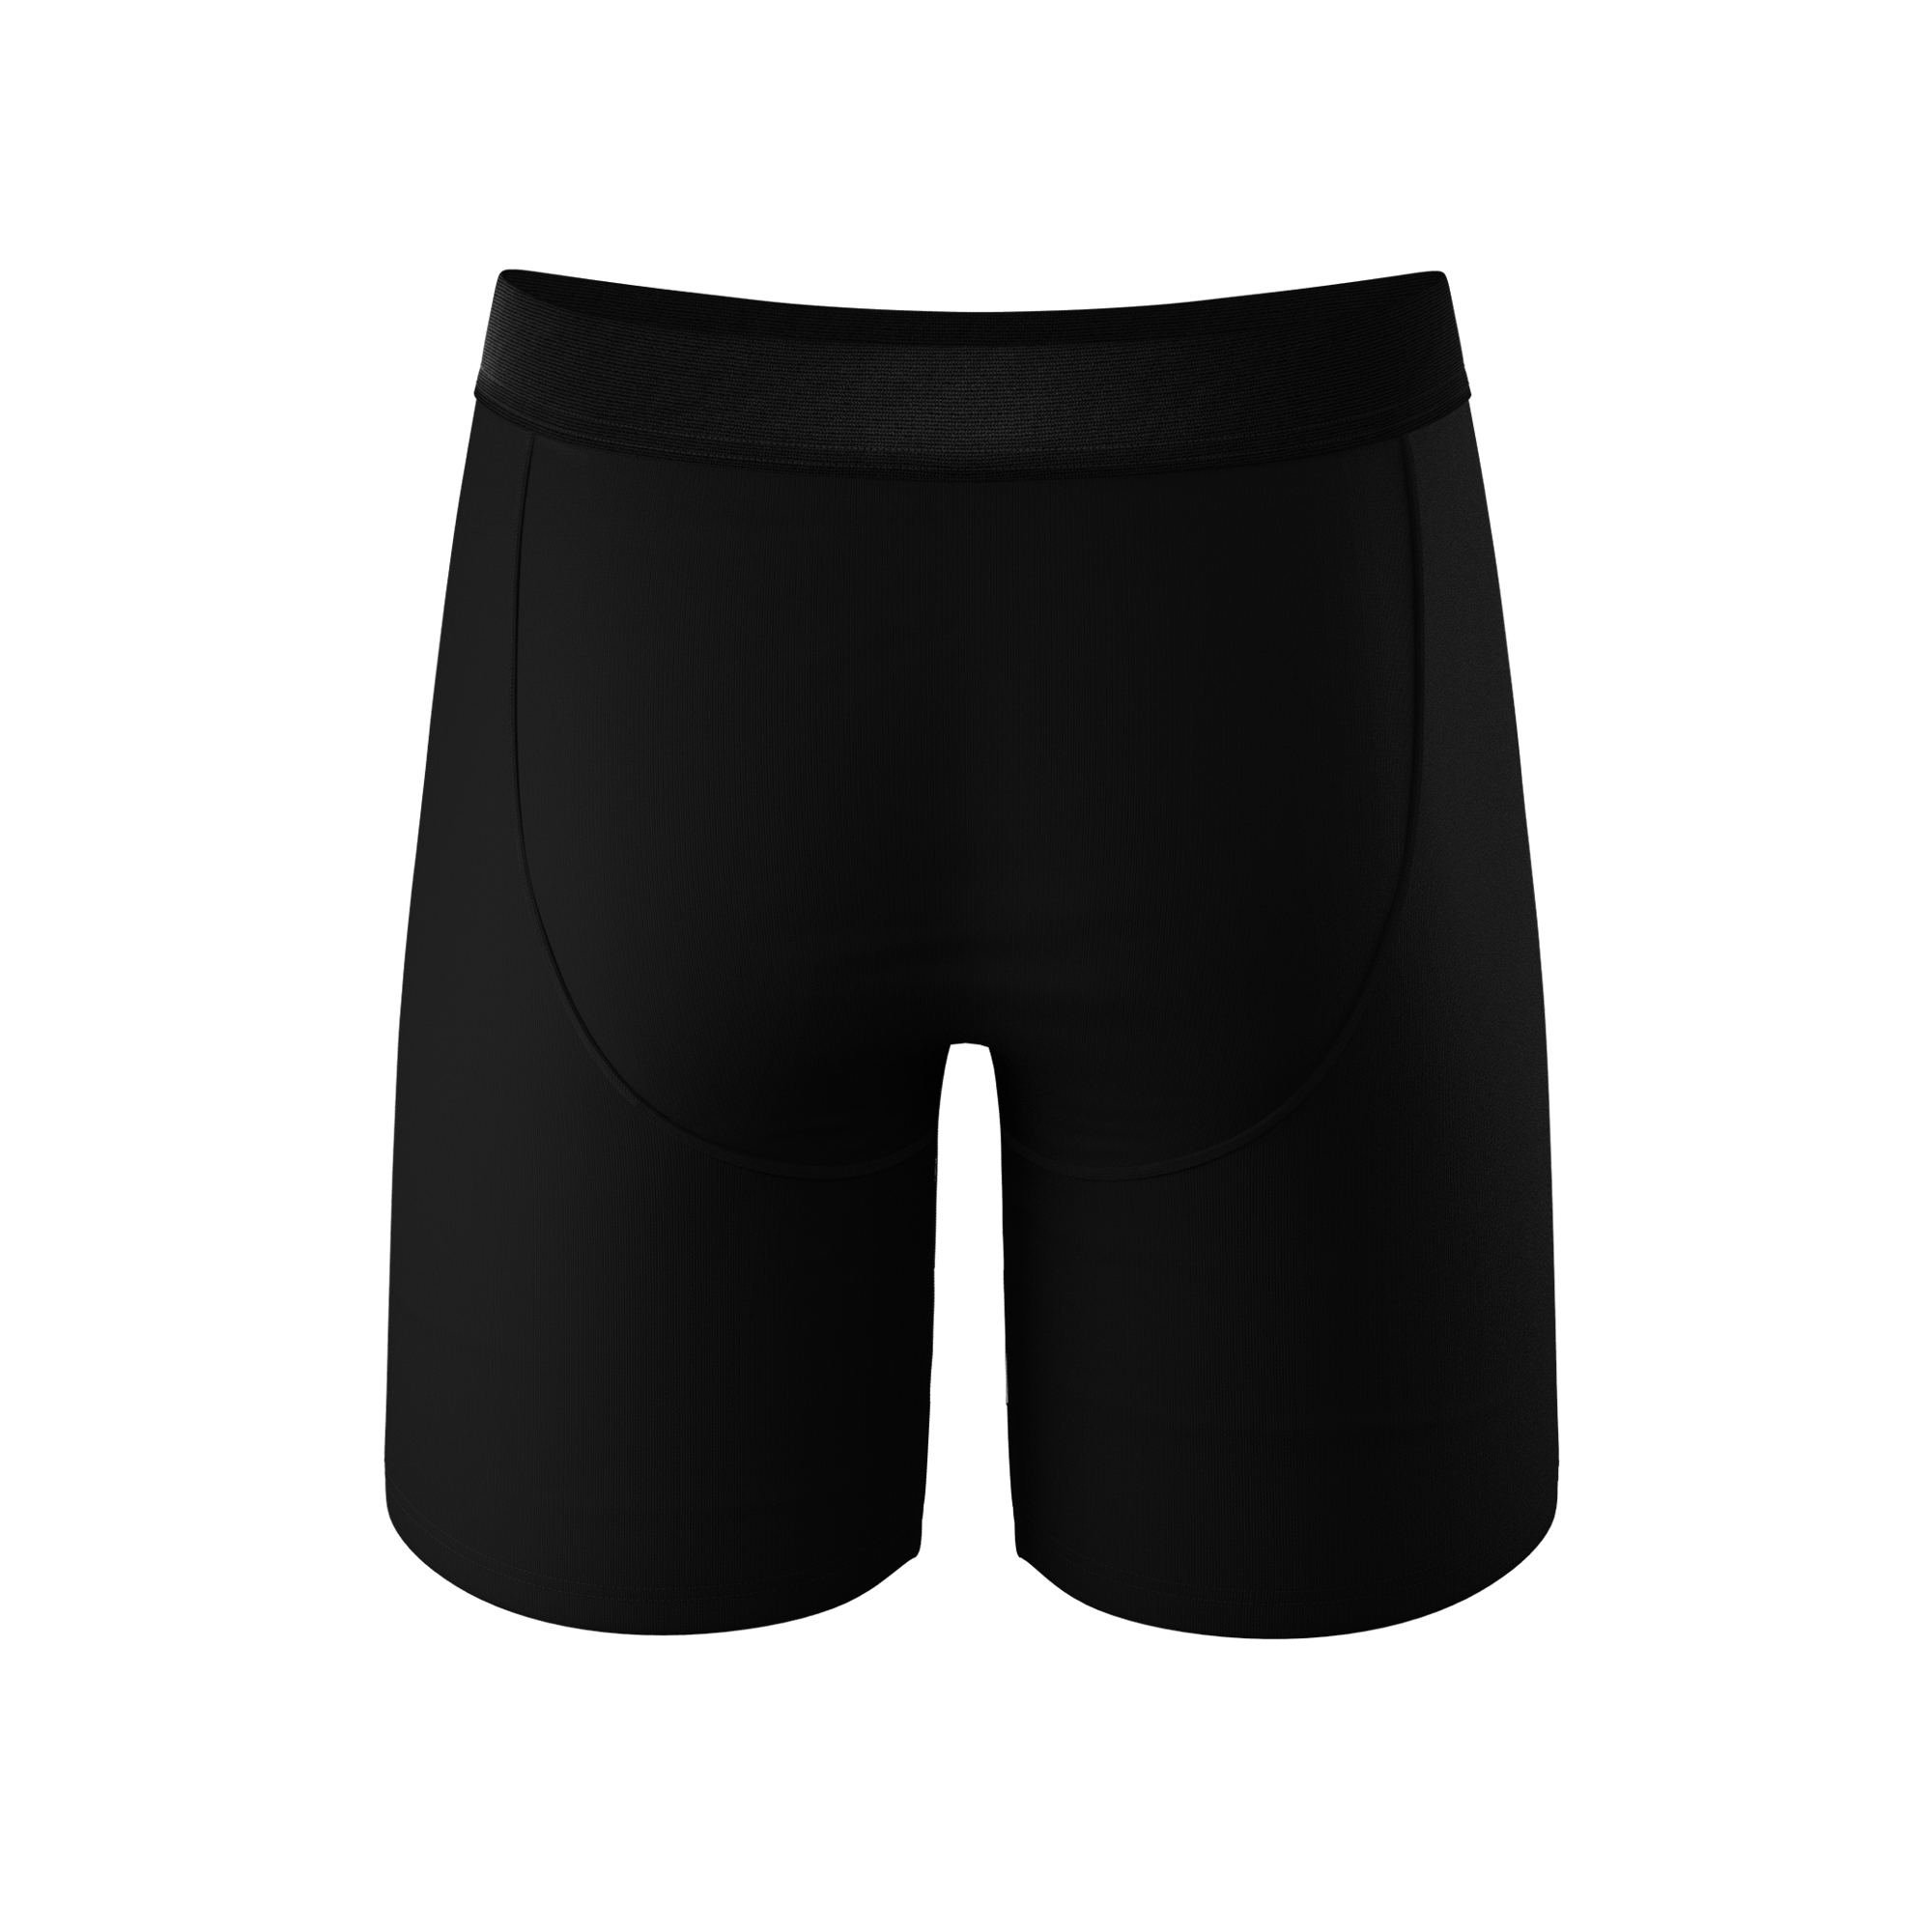 Plain Black Unisex Boxers, Men's Women's Pants